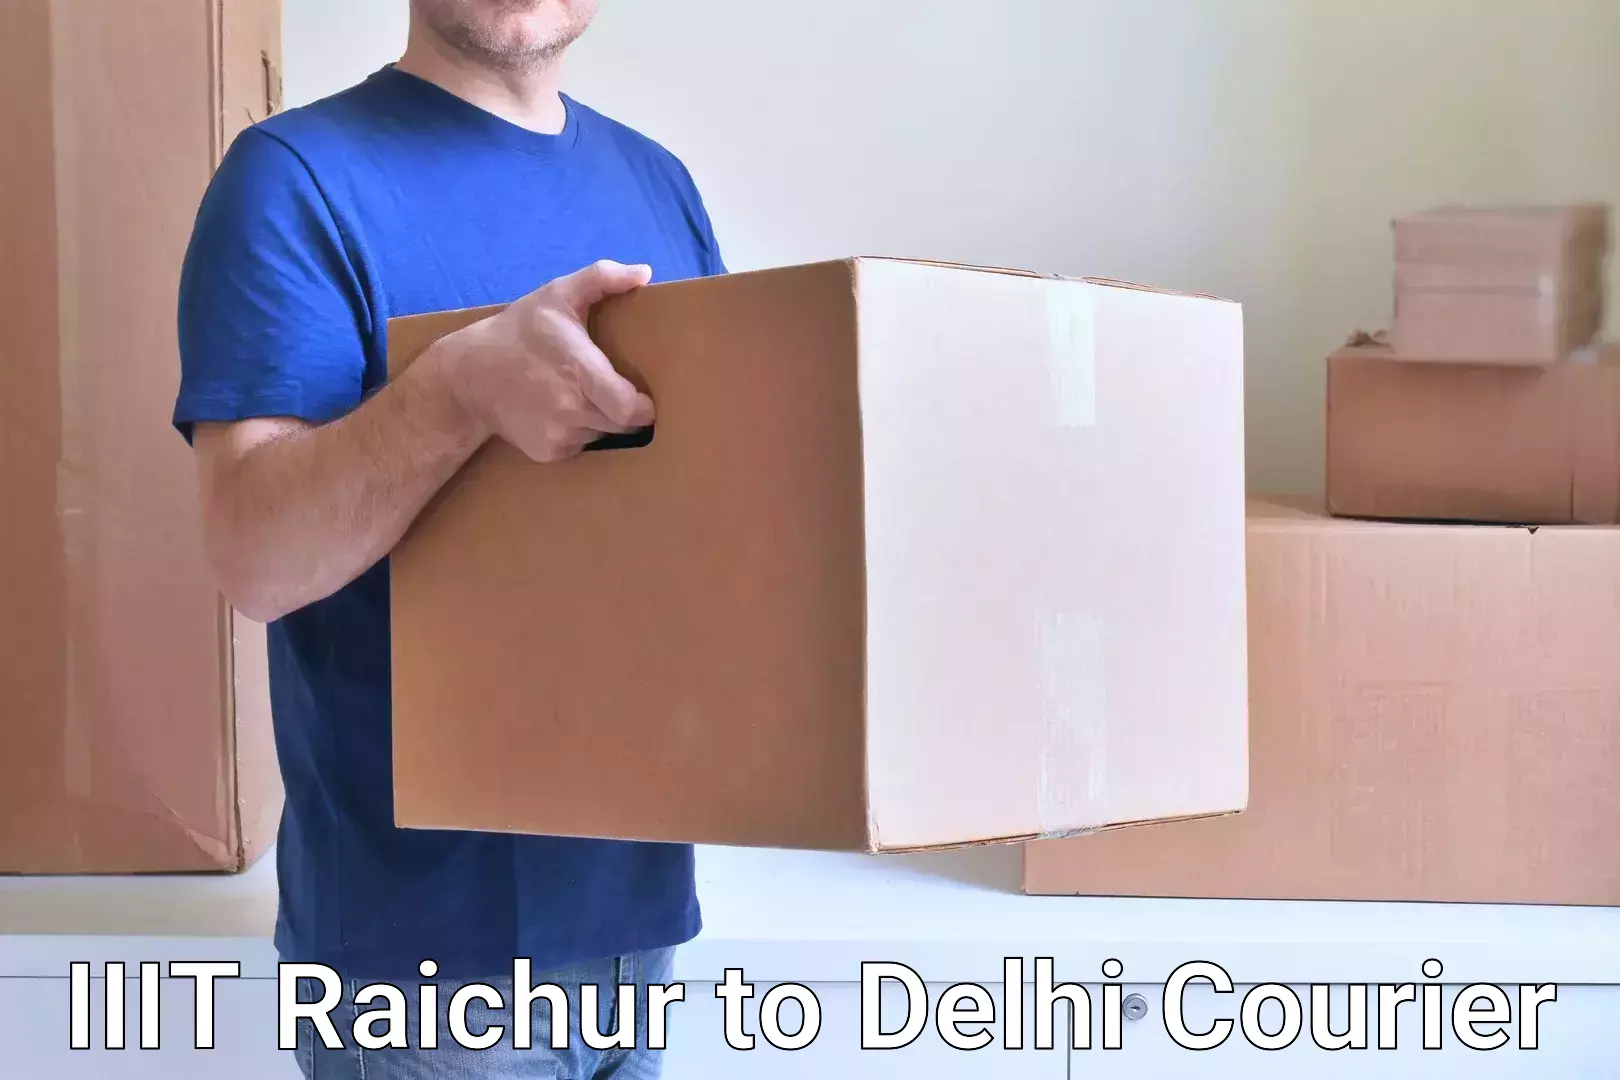 Seamless shipping experience in IIIT Raichur to IIT Delhi